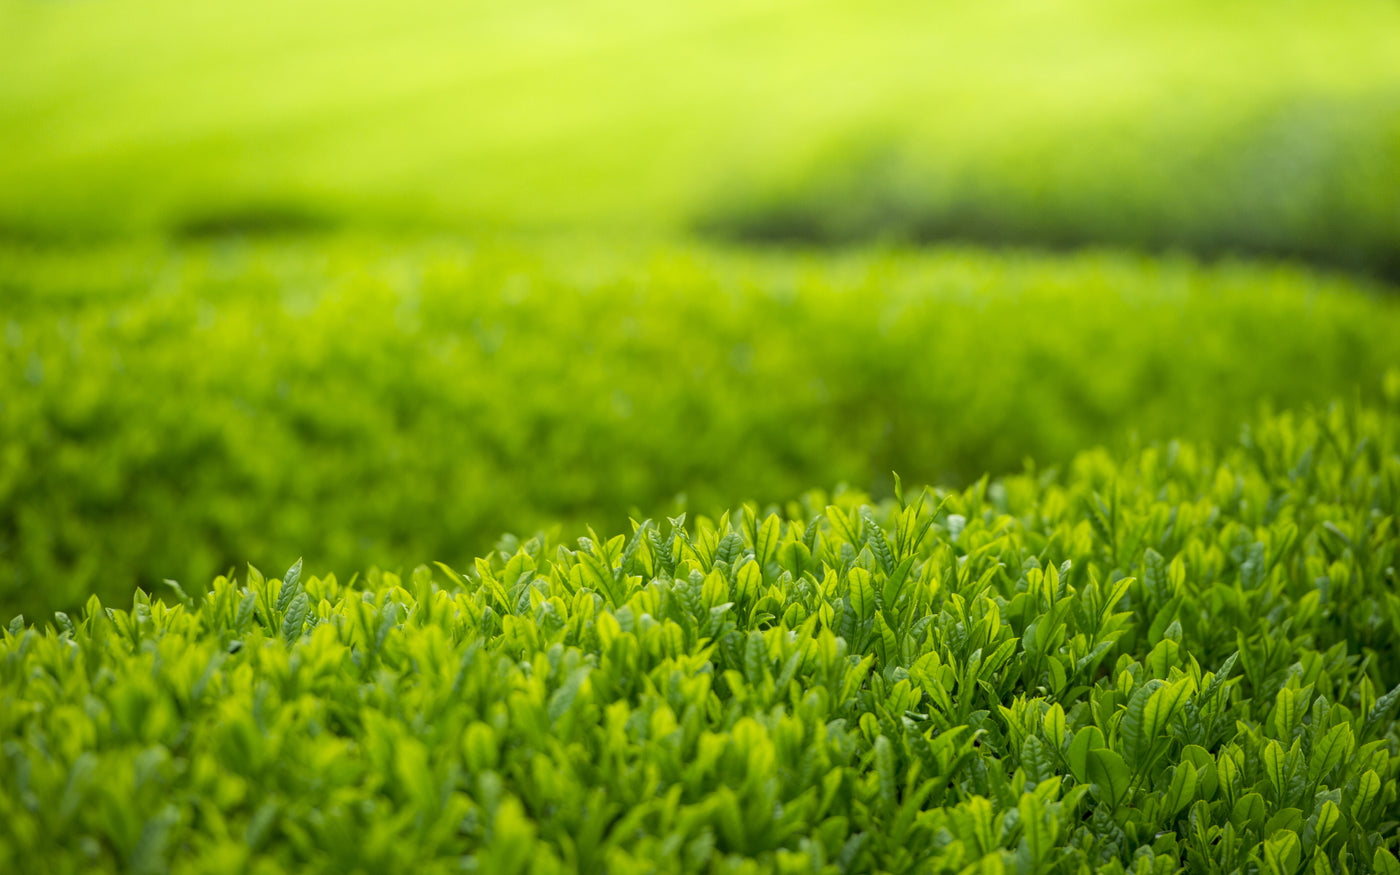 Frost Prevention Matcha Green Tea Fields